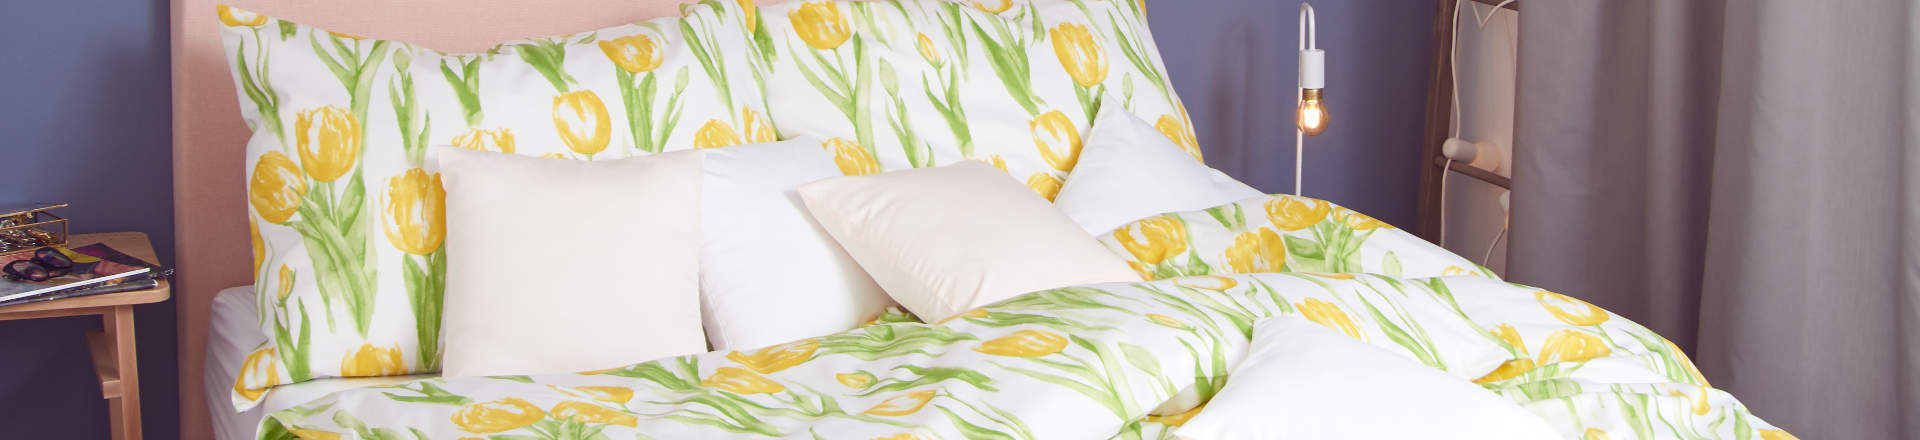 světlé povlečení s tulipány SCANquilt, fotka na reálné posteli